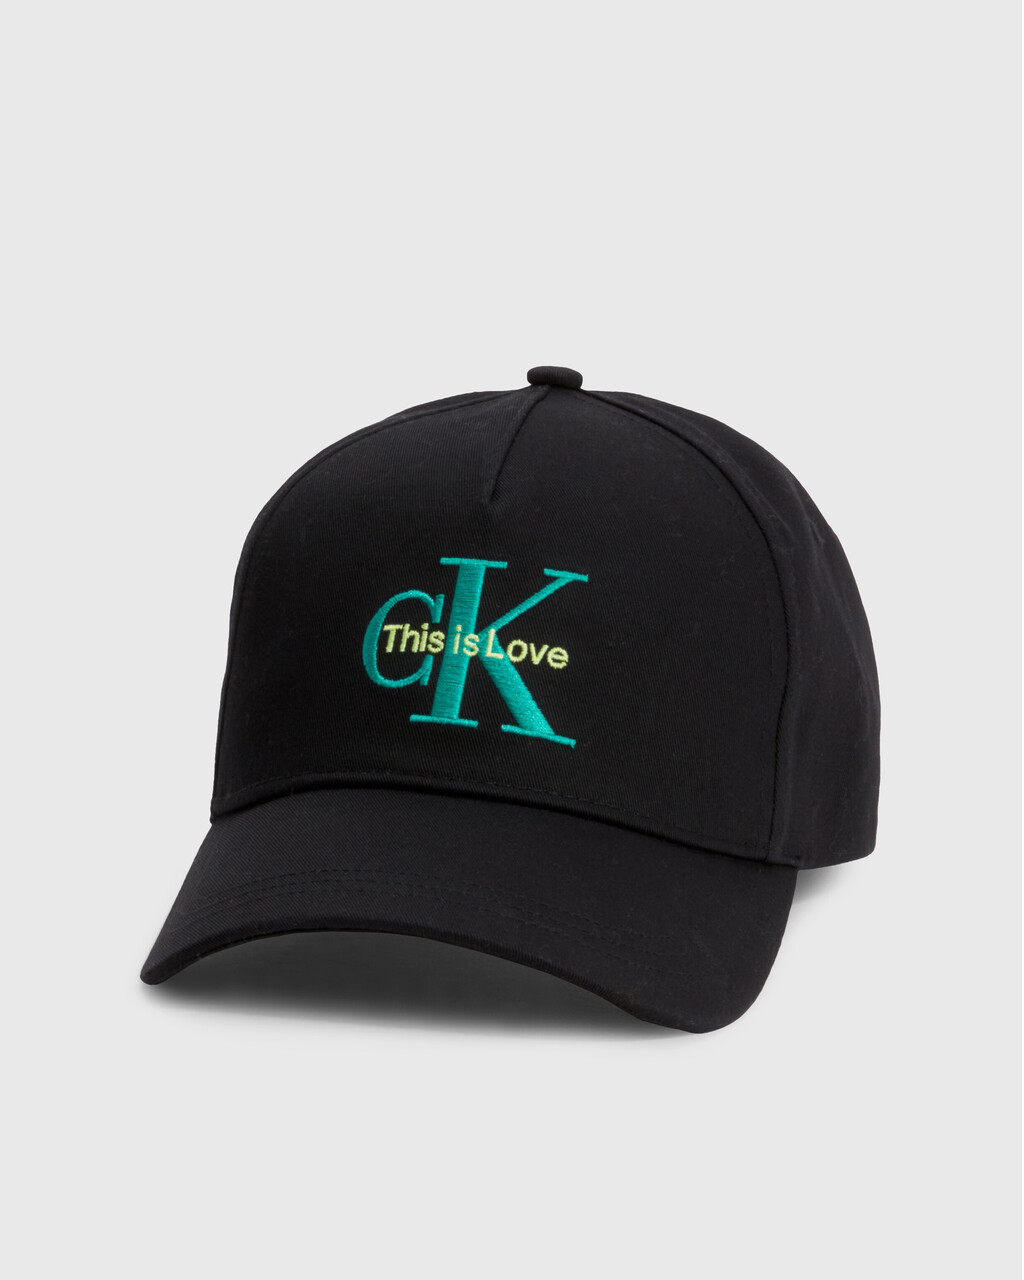 PRIDE 棉質斜紋棒球帽, Black, hi-res